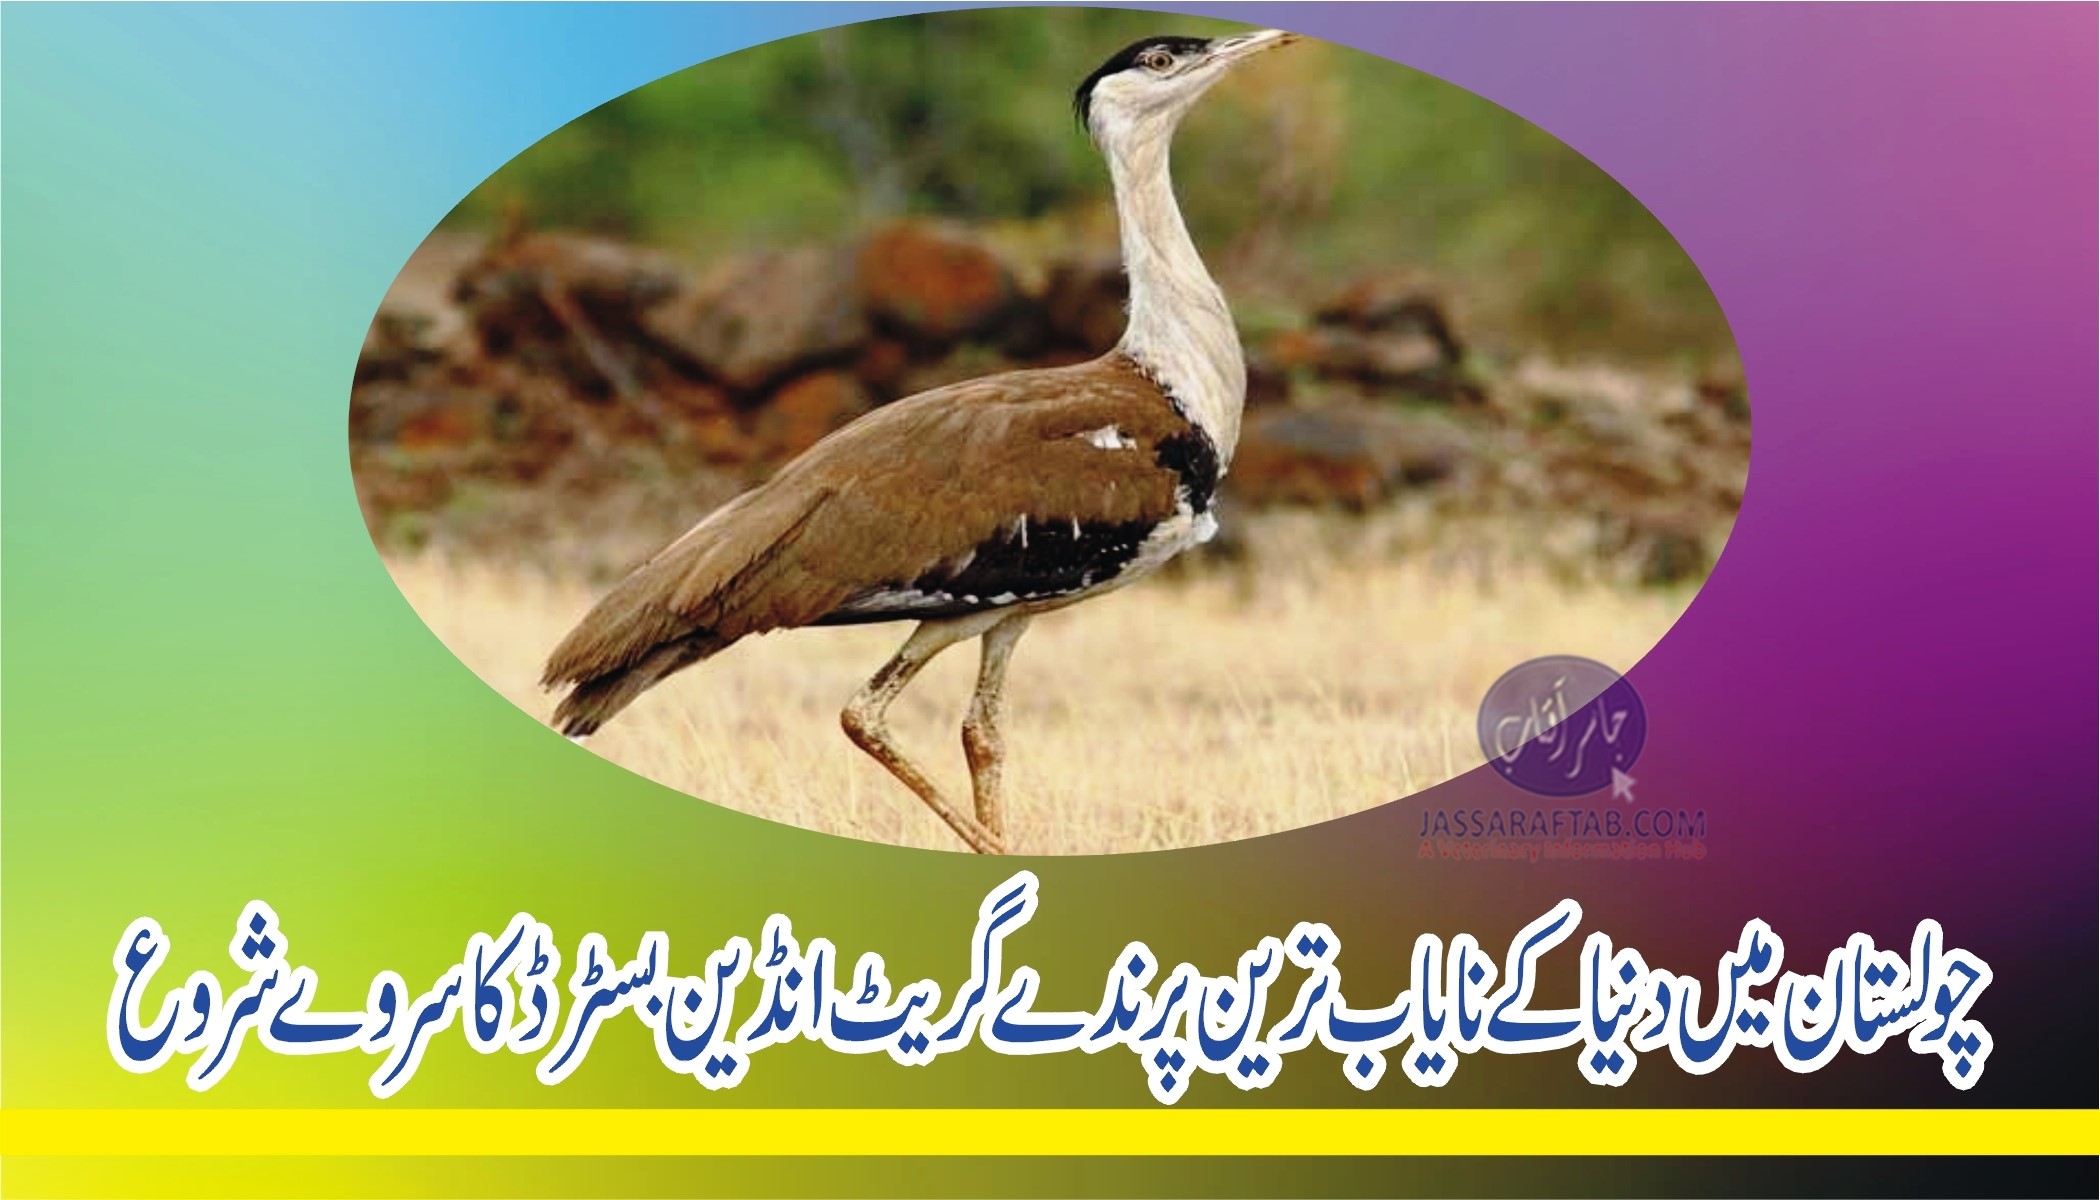 چولستان میں دنیا کے نایاب ترین پرندے گریٹ انڈین بسٹرڈ کا سروے شروع